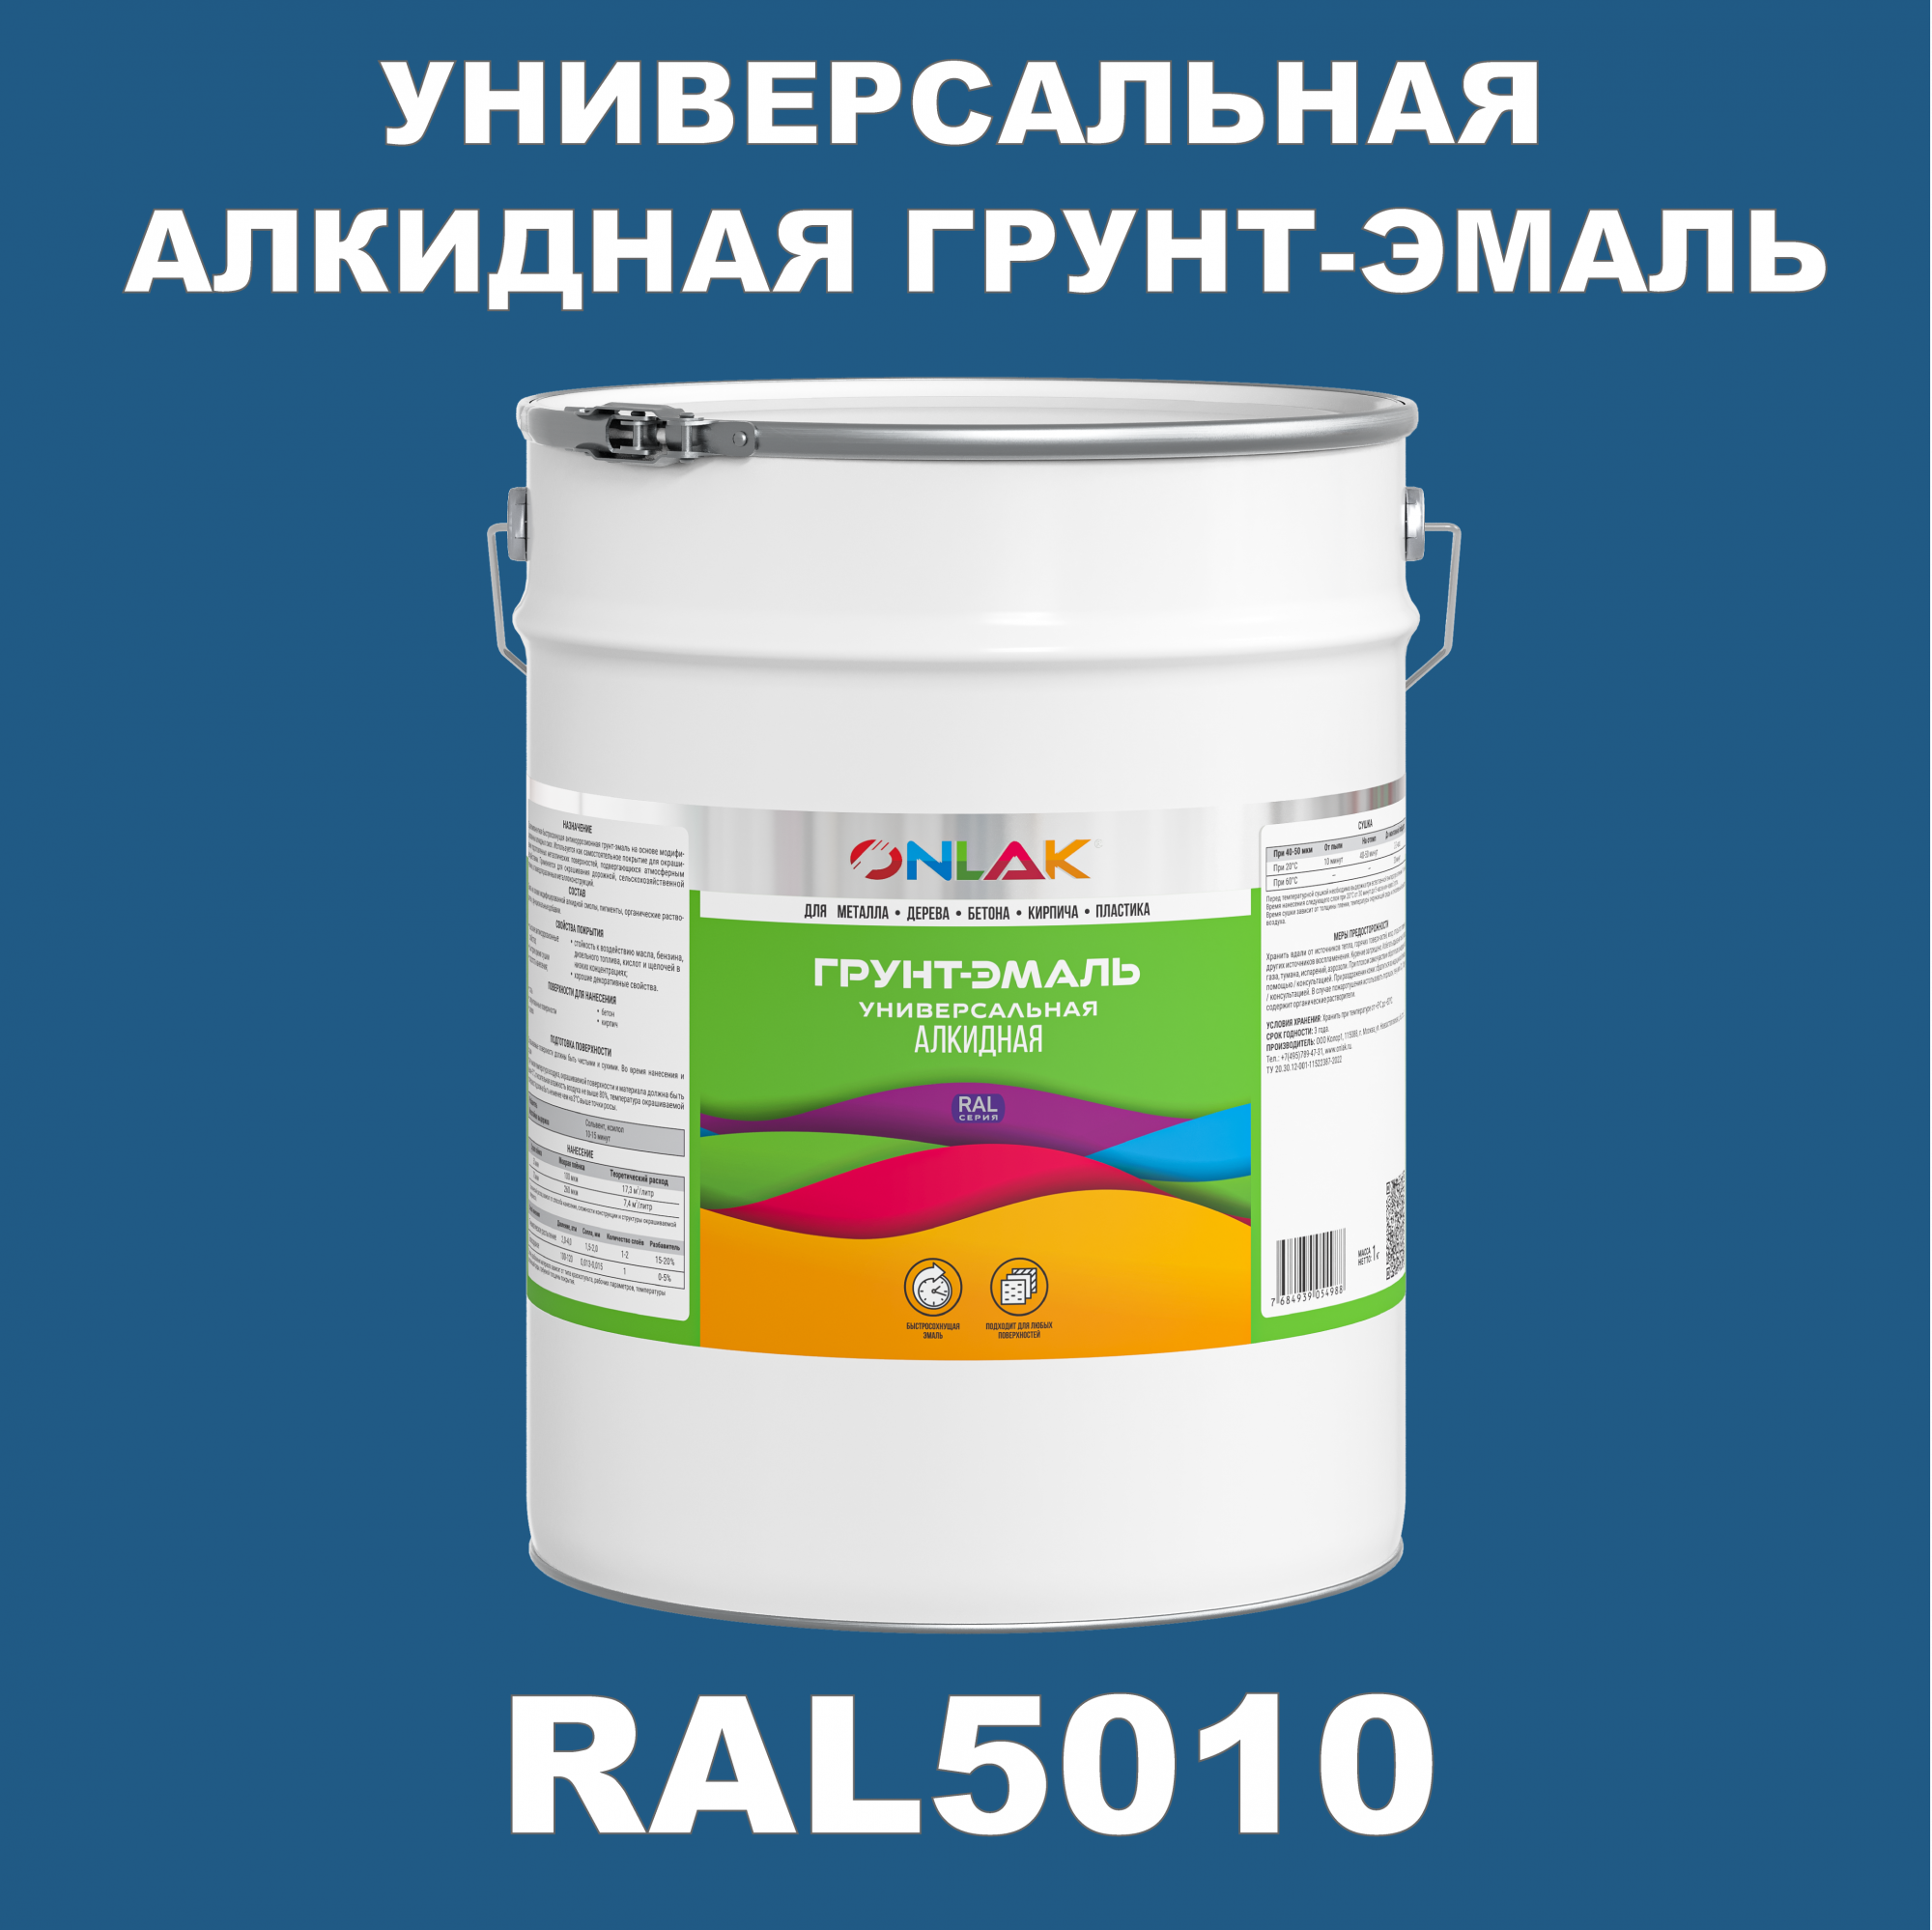 Грунт-эмаль ONLAK 1К RAL5010 антикоррозионная алкидная по металлу по ржавчине 20 кг грунт эмаль skladno по ржавчине алкидная желтая 1 8 кг